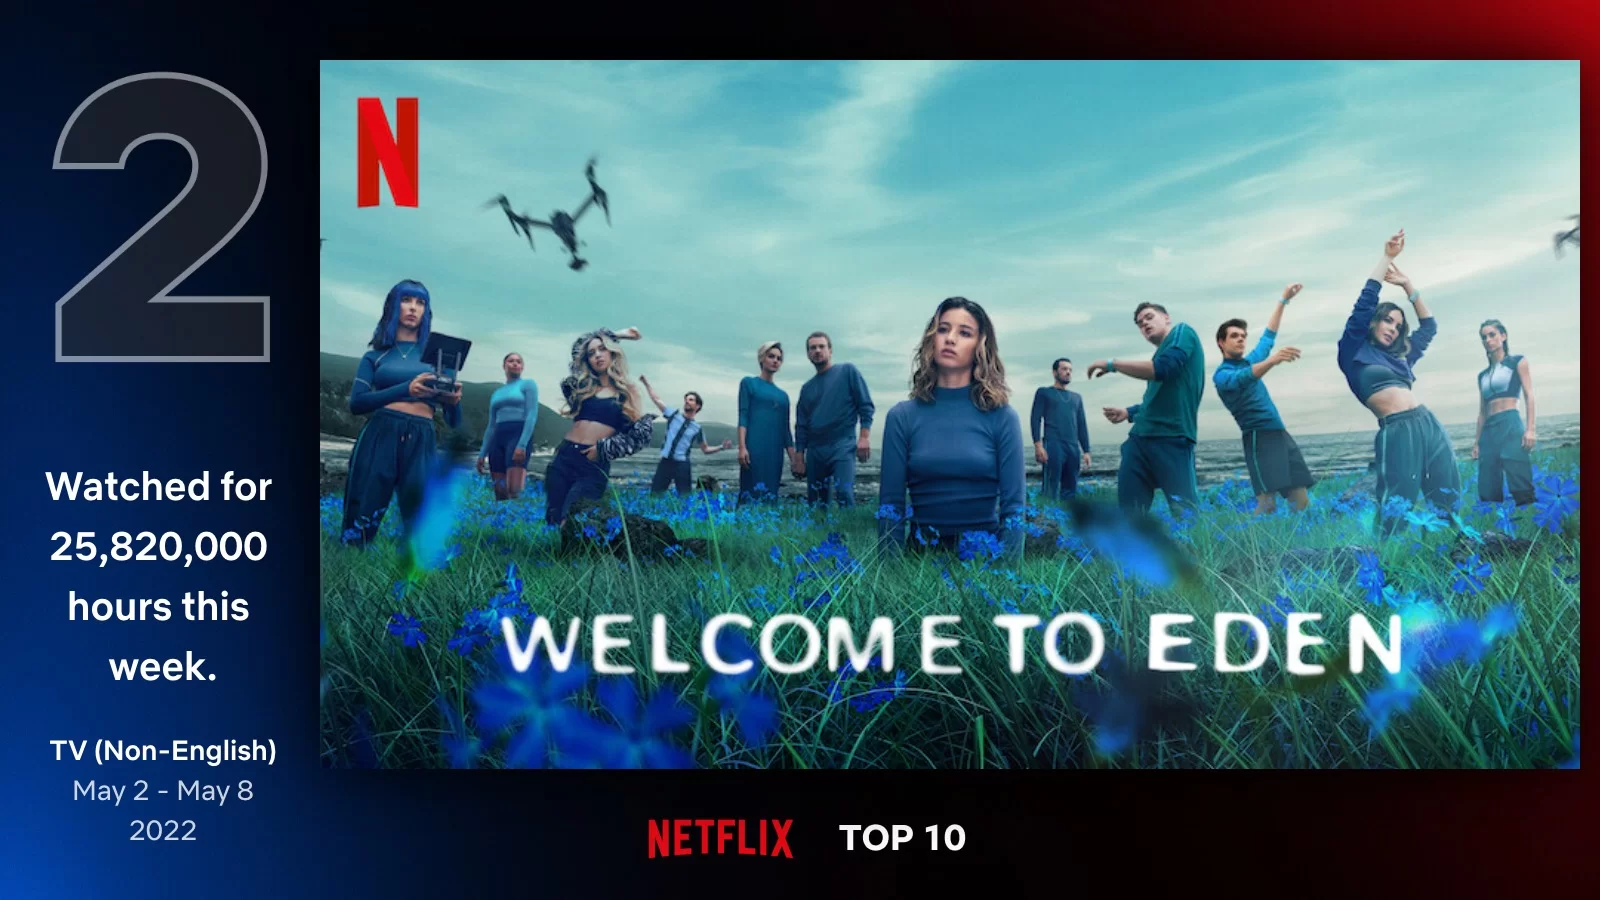 Welcome To Eden Netflix Top Ten Data.webp